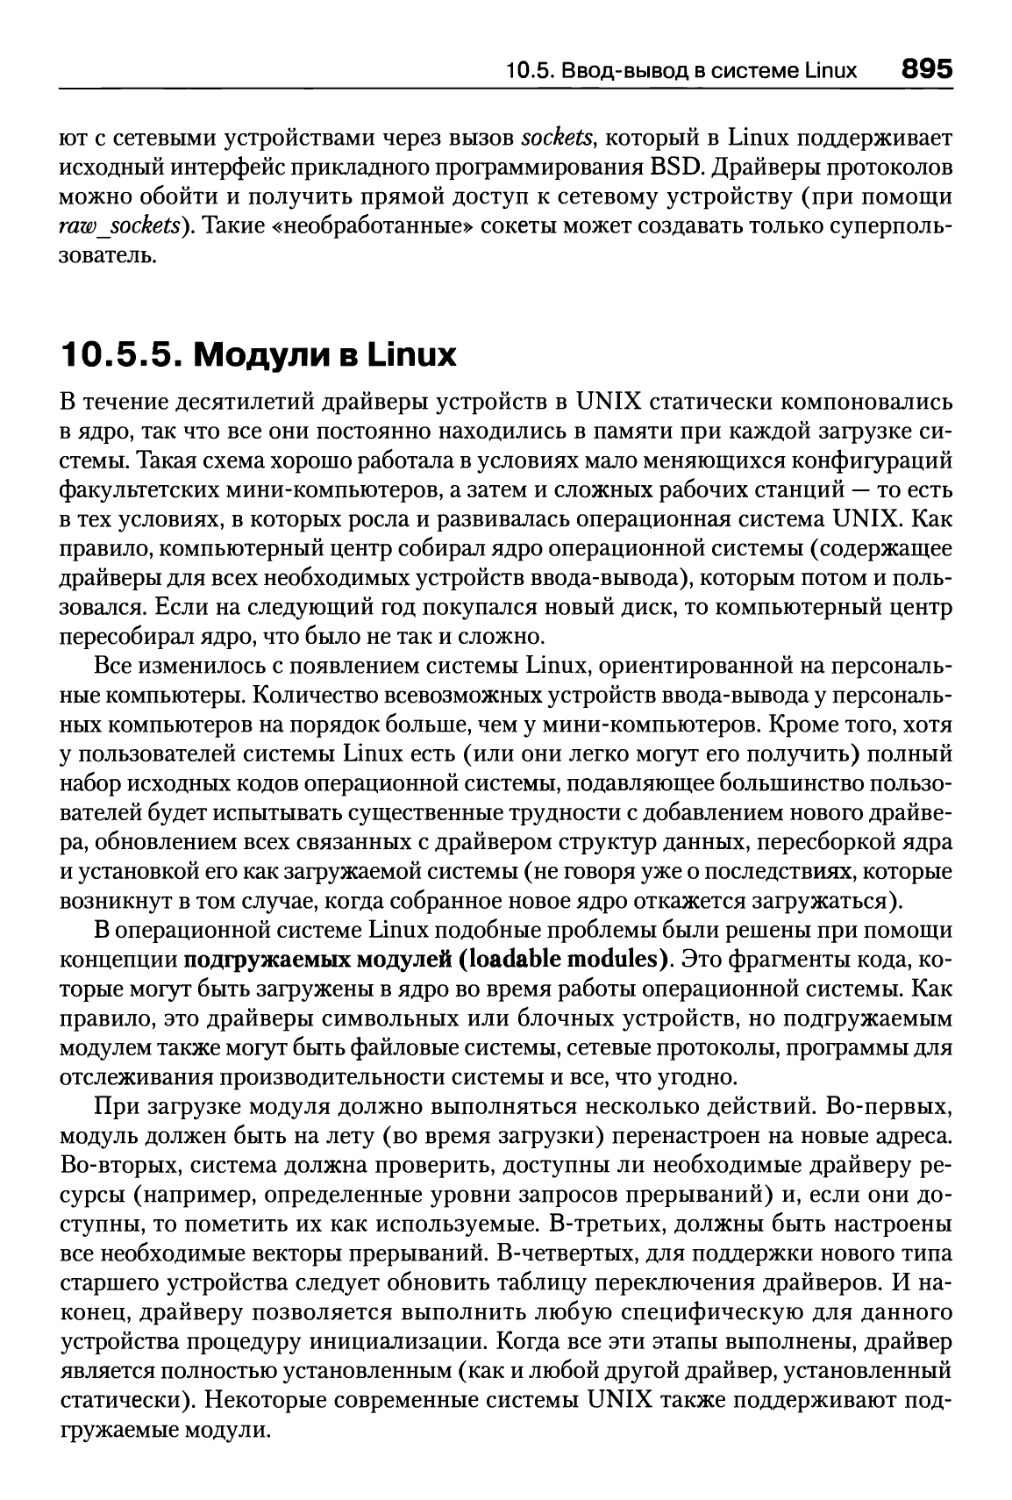 10.5.5. Модули в Linux